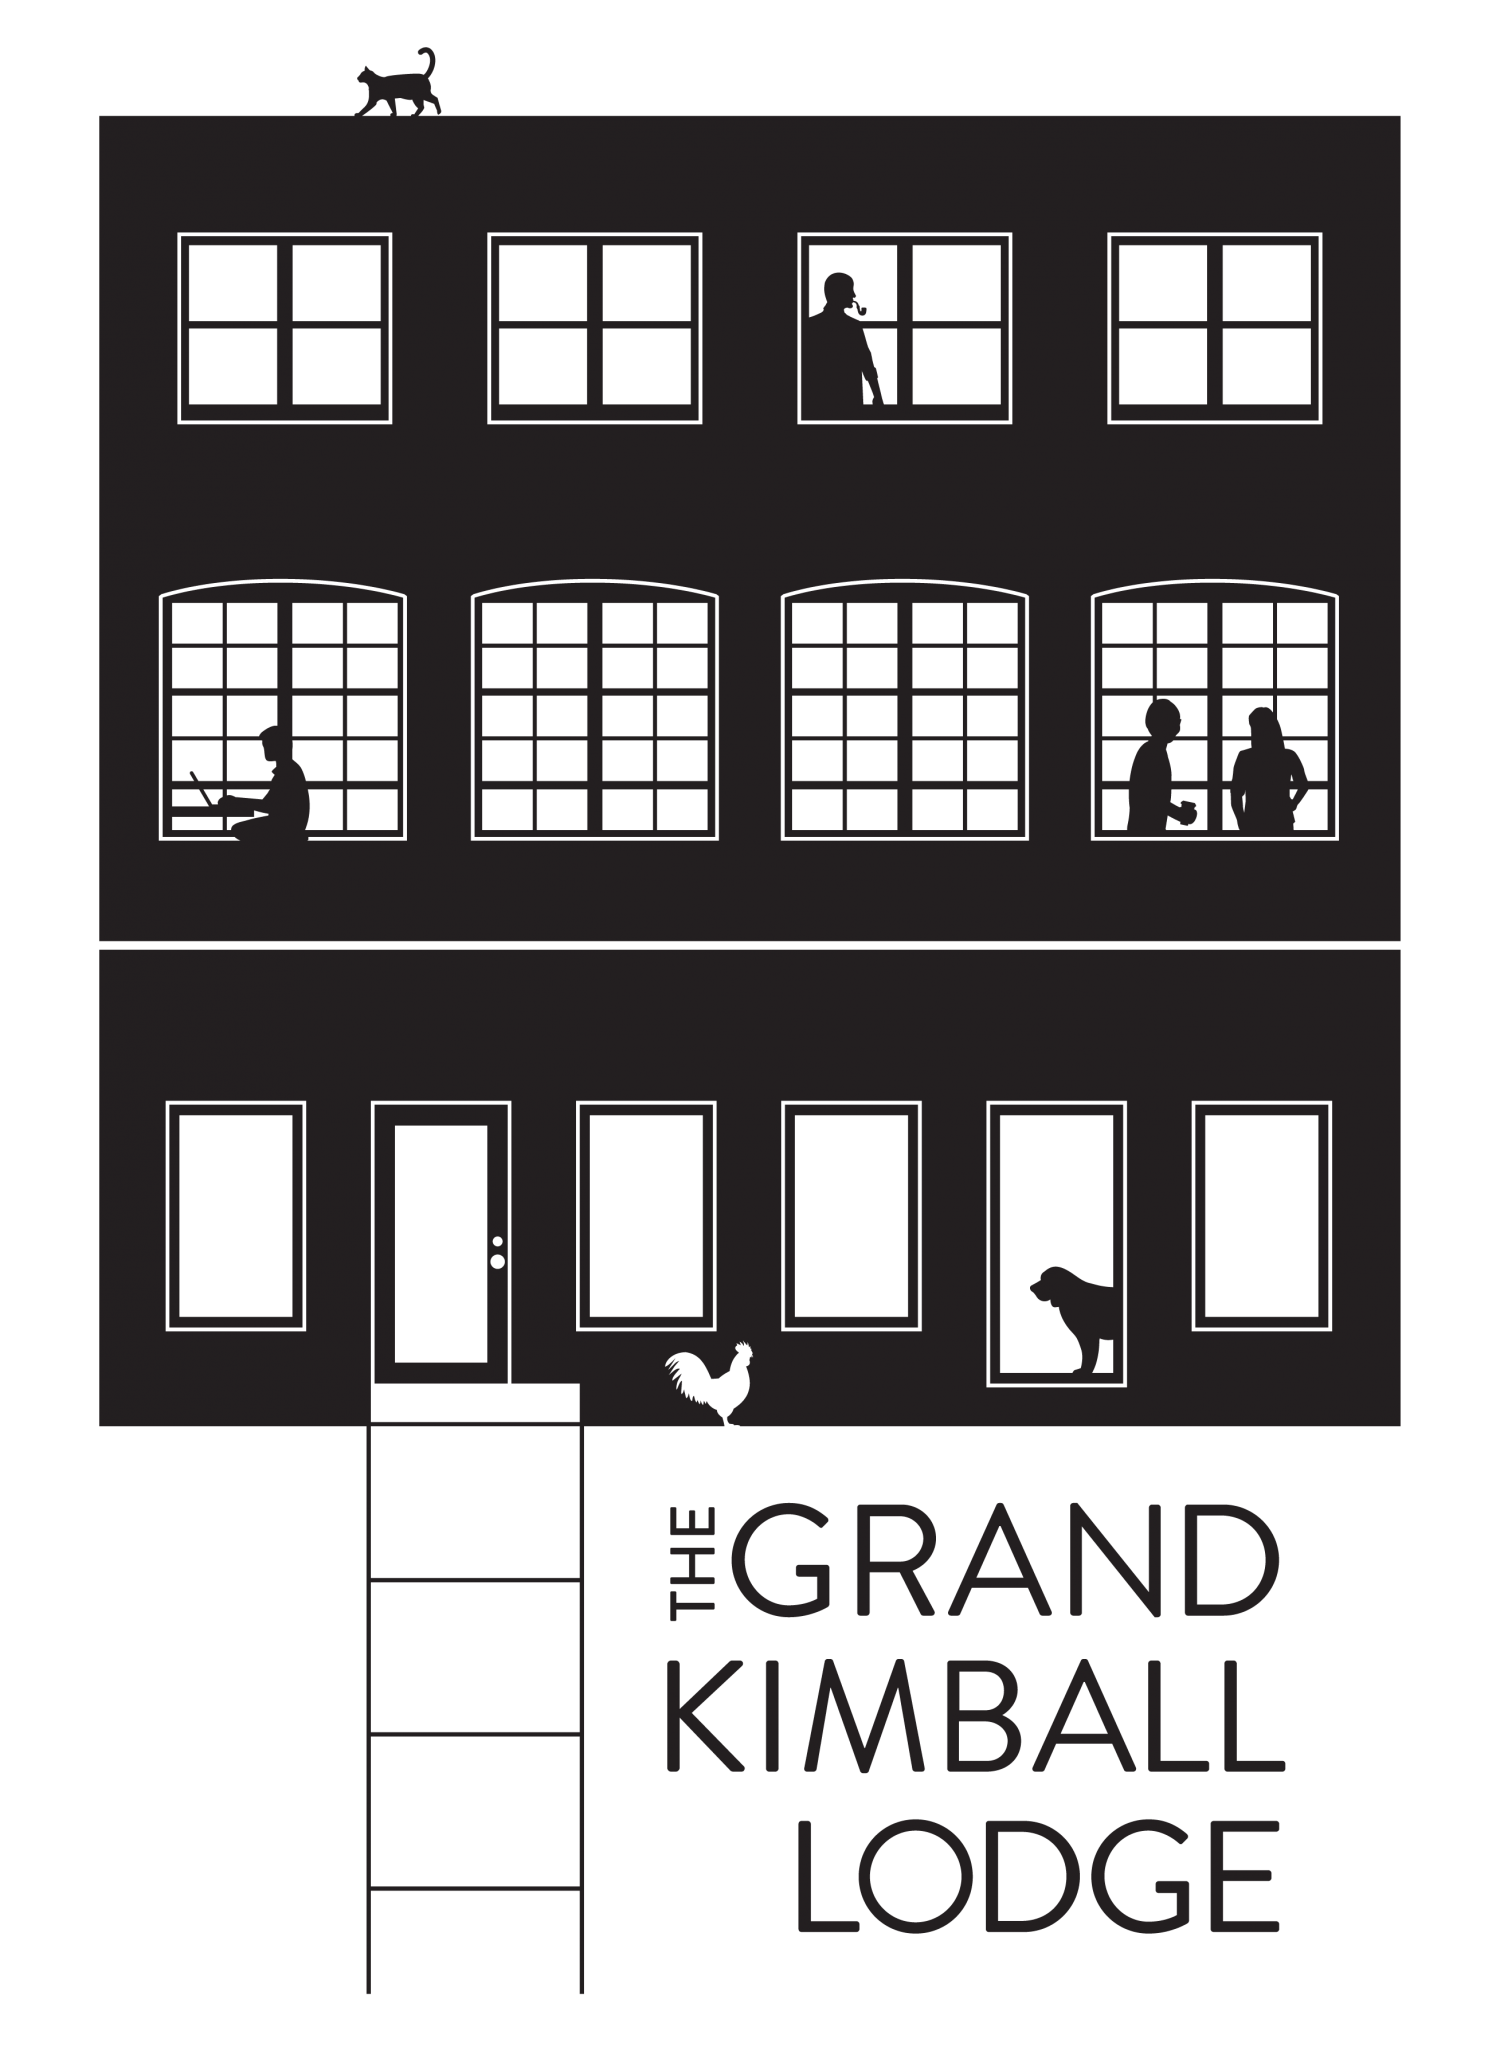 Grand Kimball Lodge Logo